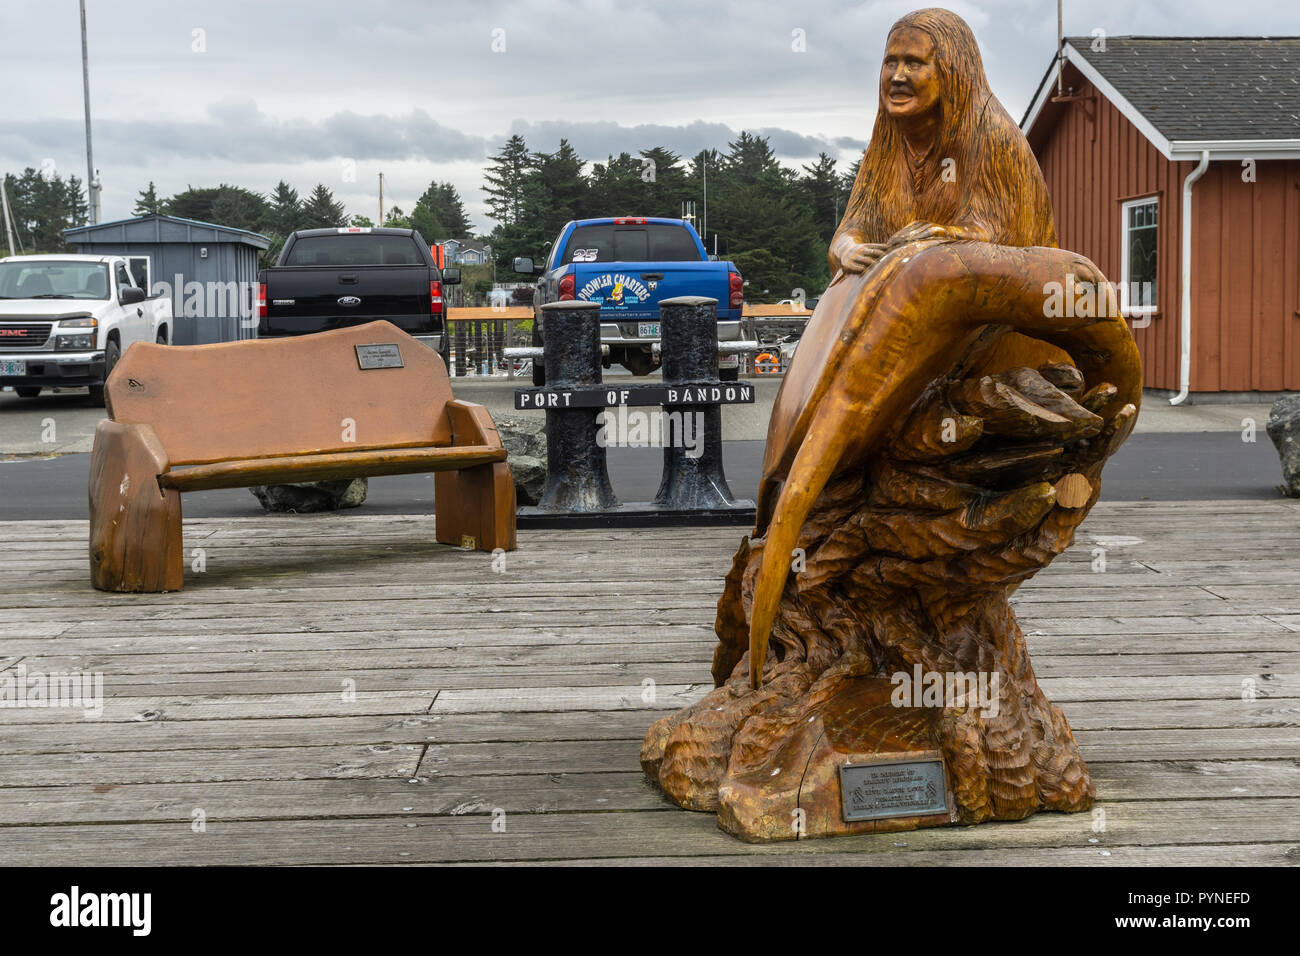 Porto di vecchio Bandon dock con opere in legno, Oregon, Stati Uniti d'America. Foto Stock